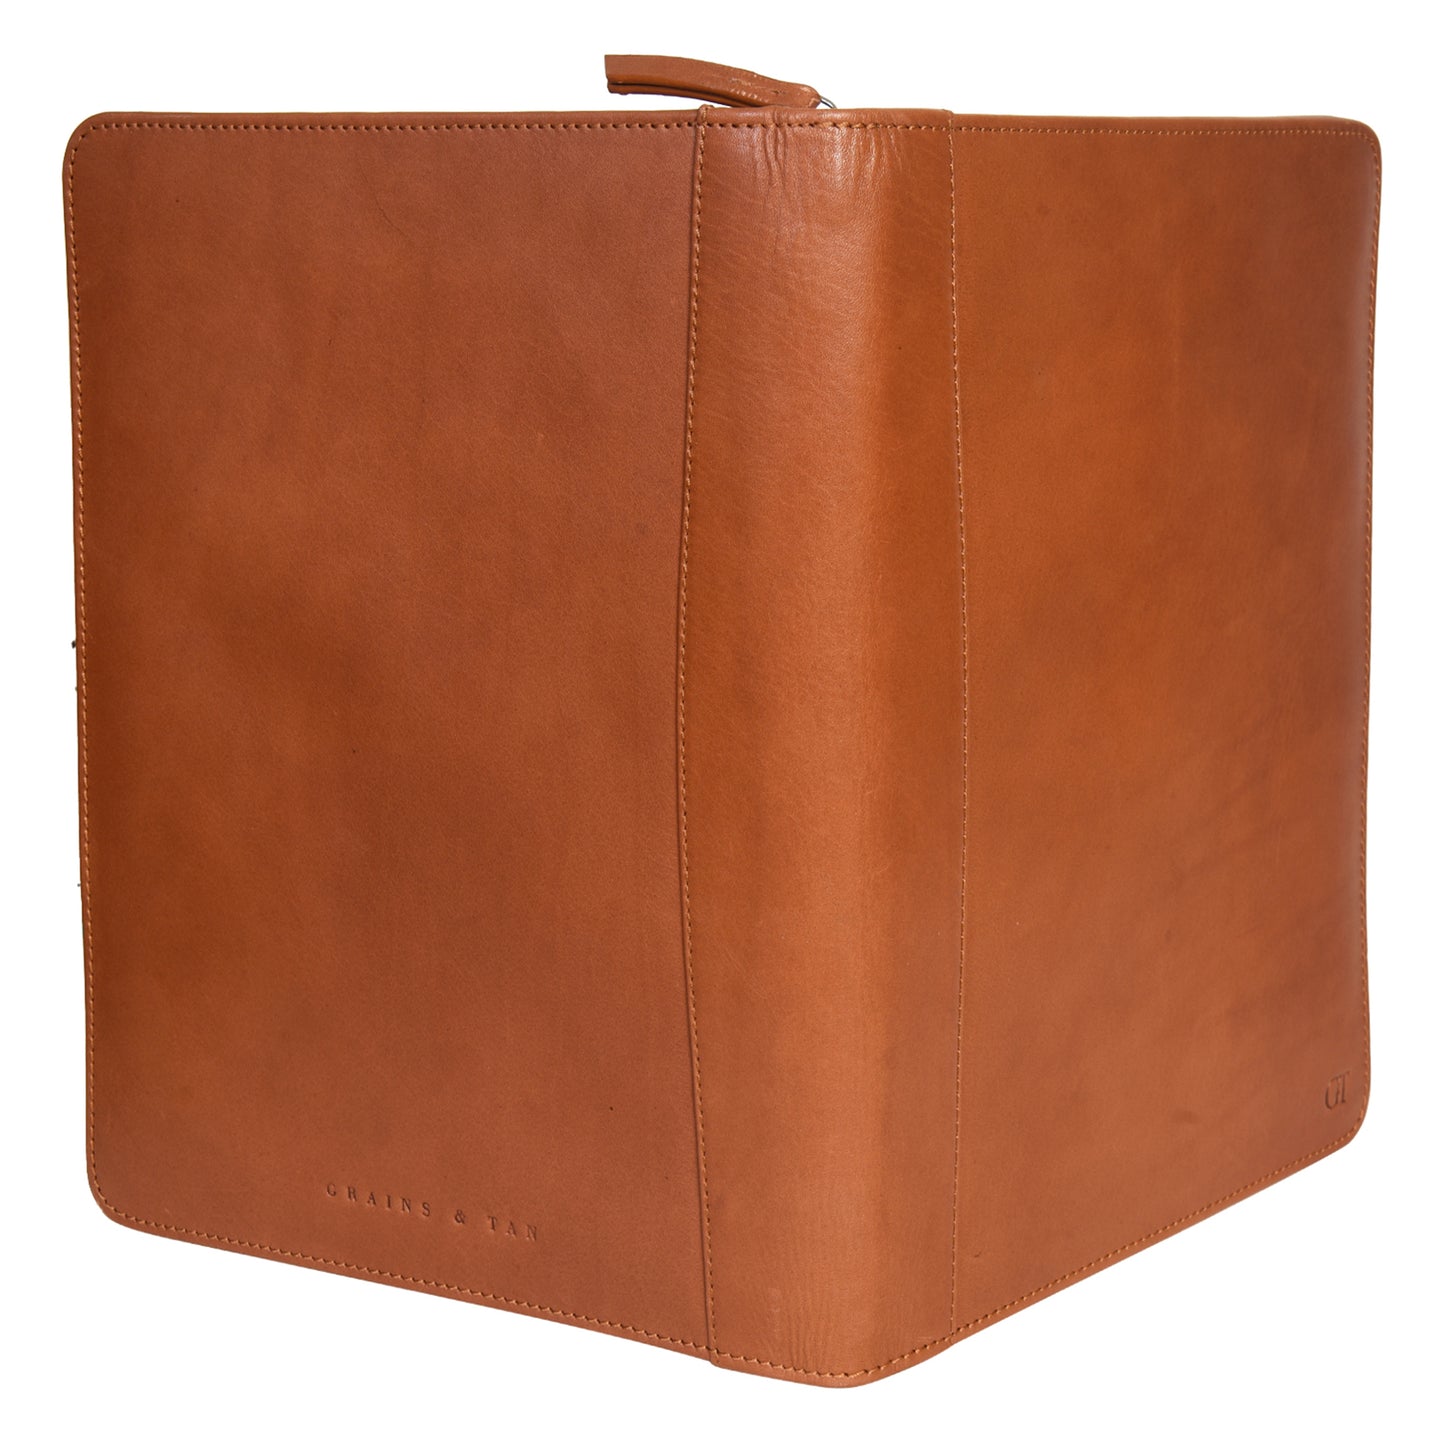 G&T Full-grain Leather Zip-round Underarm Folio, A4 Folio, Document/Certificate Holder